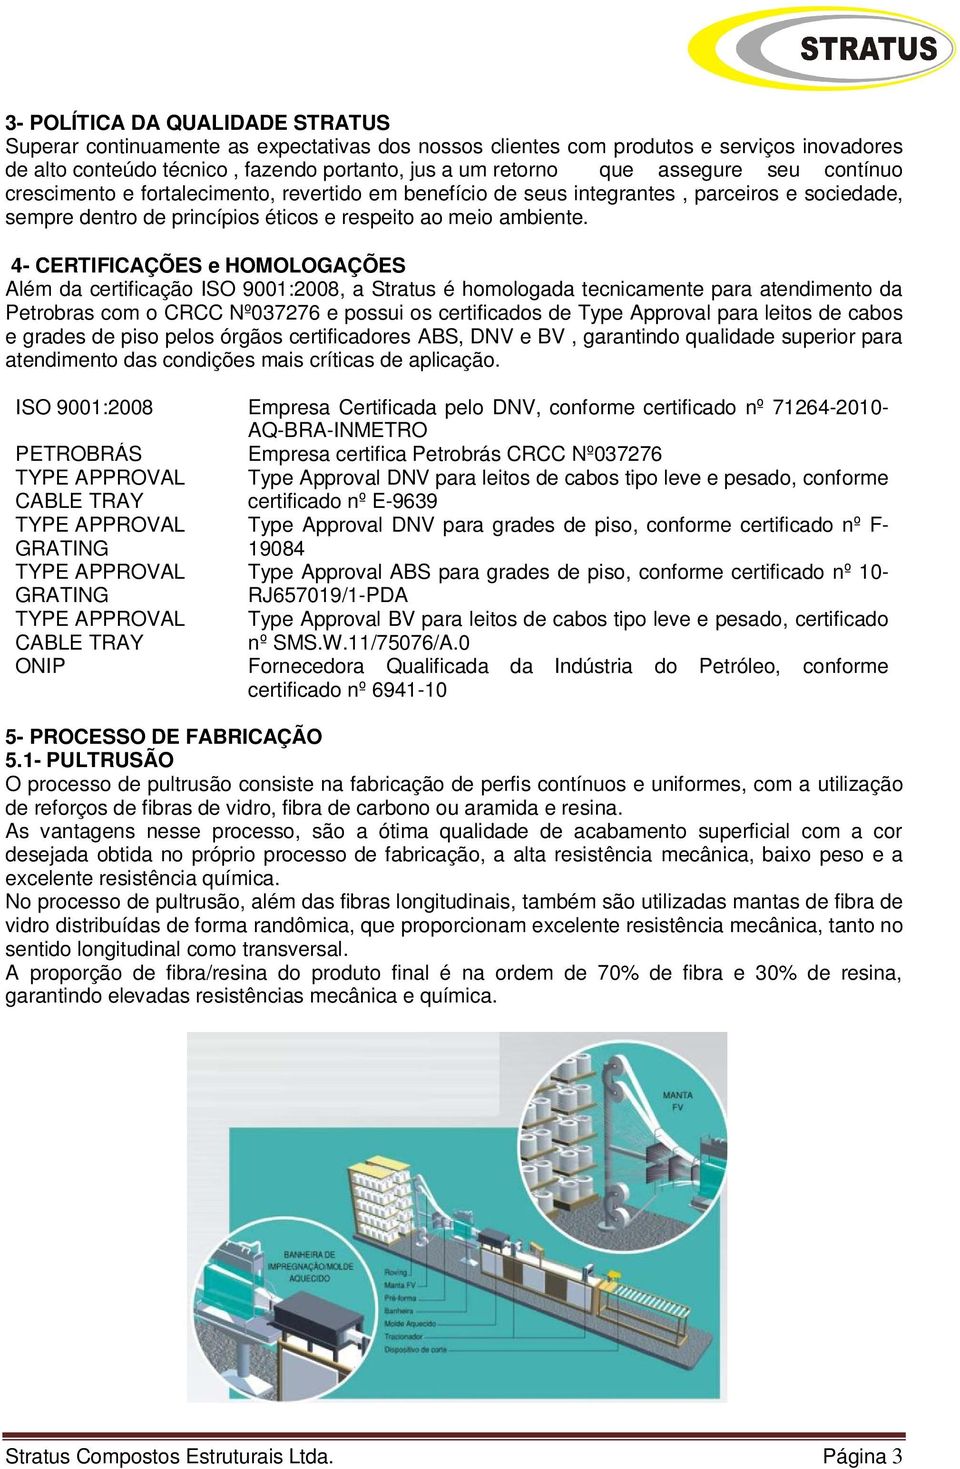 4- CERTIFICAÇÕES e HOMOLOGAÇÕES Além da certificação ISO 9001:2008, a Stratus é homologada tecnicamente para atendimento da Petrobras com o CRCC Nº037276 e possui os certificados de Type Approval